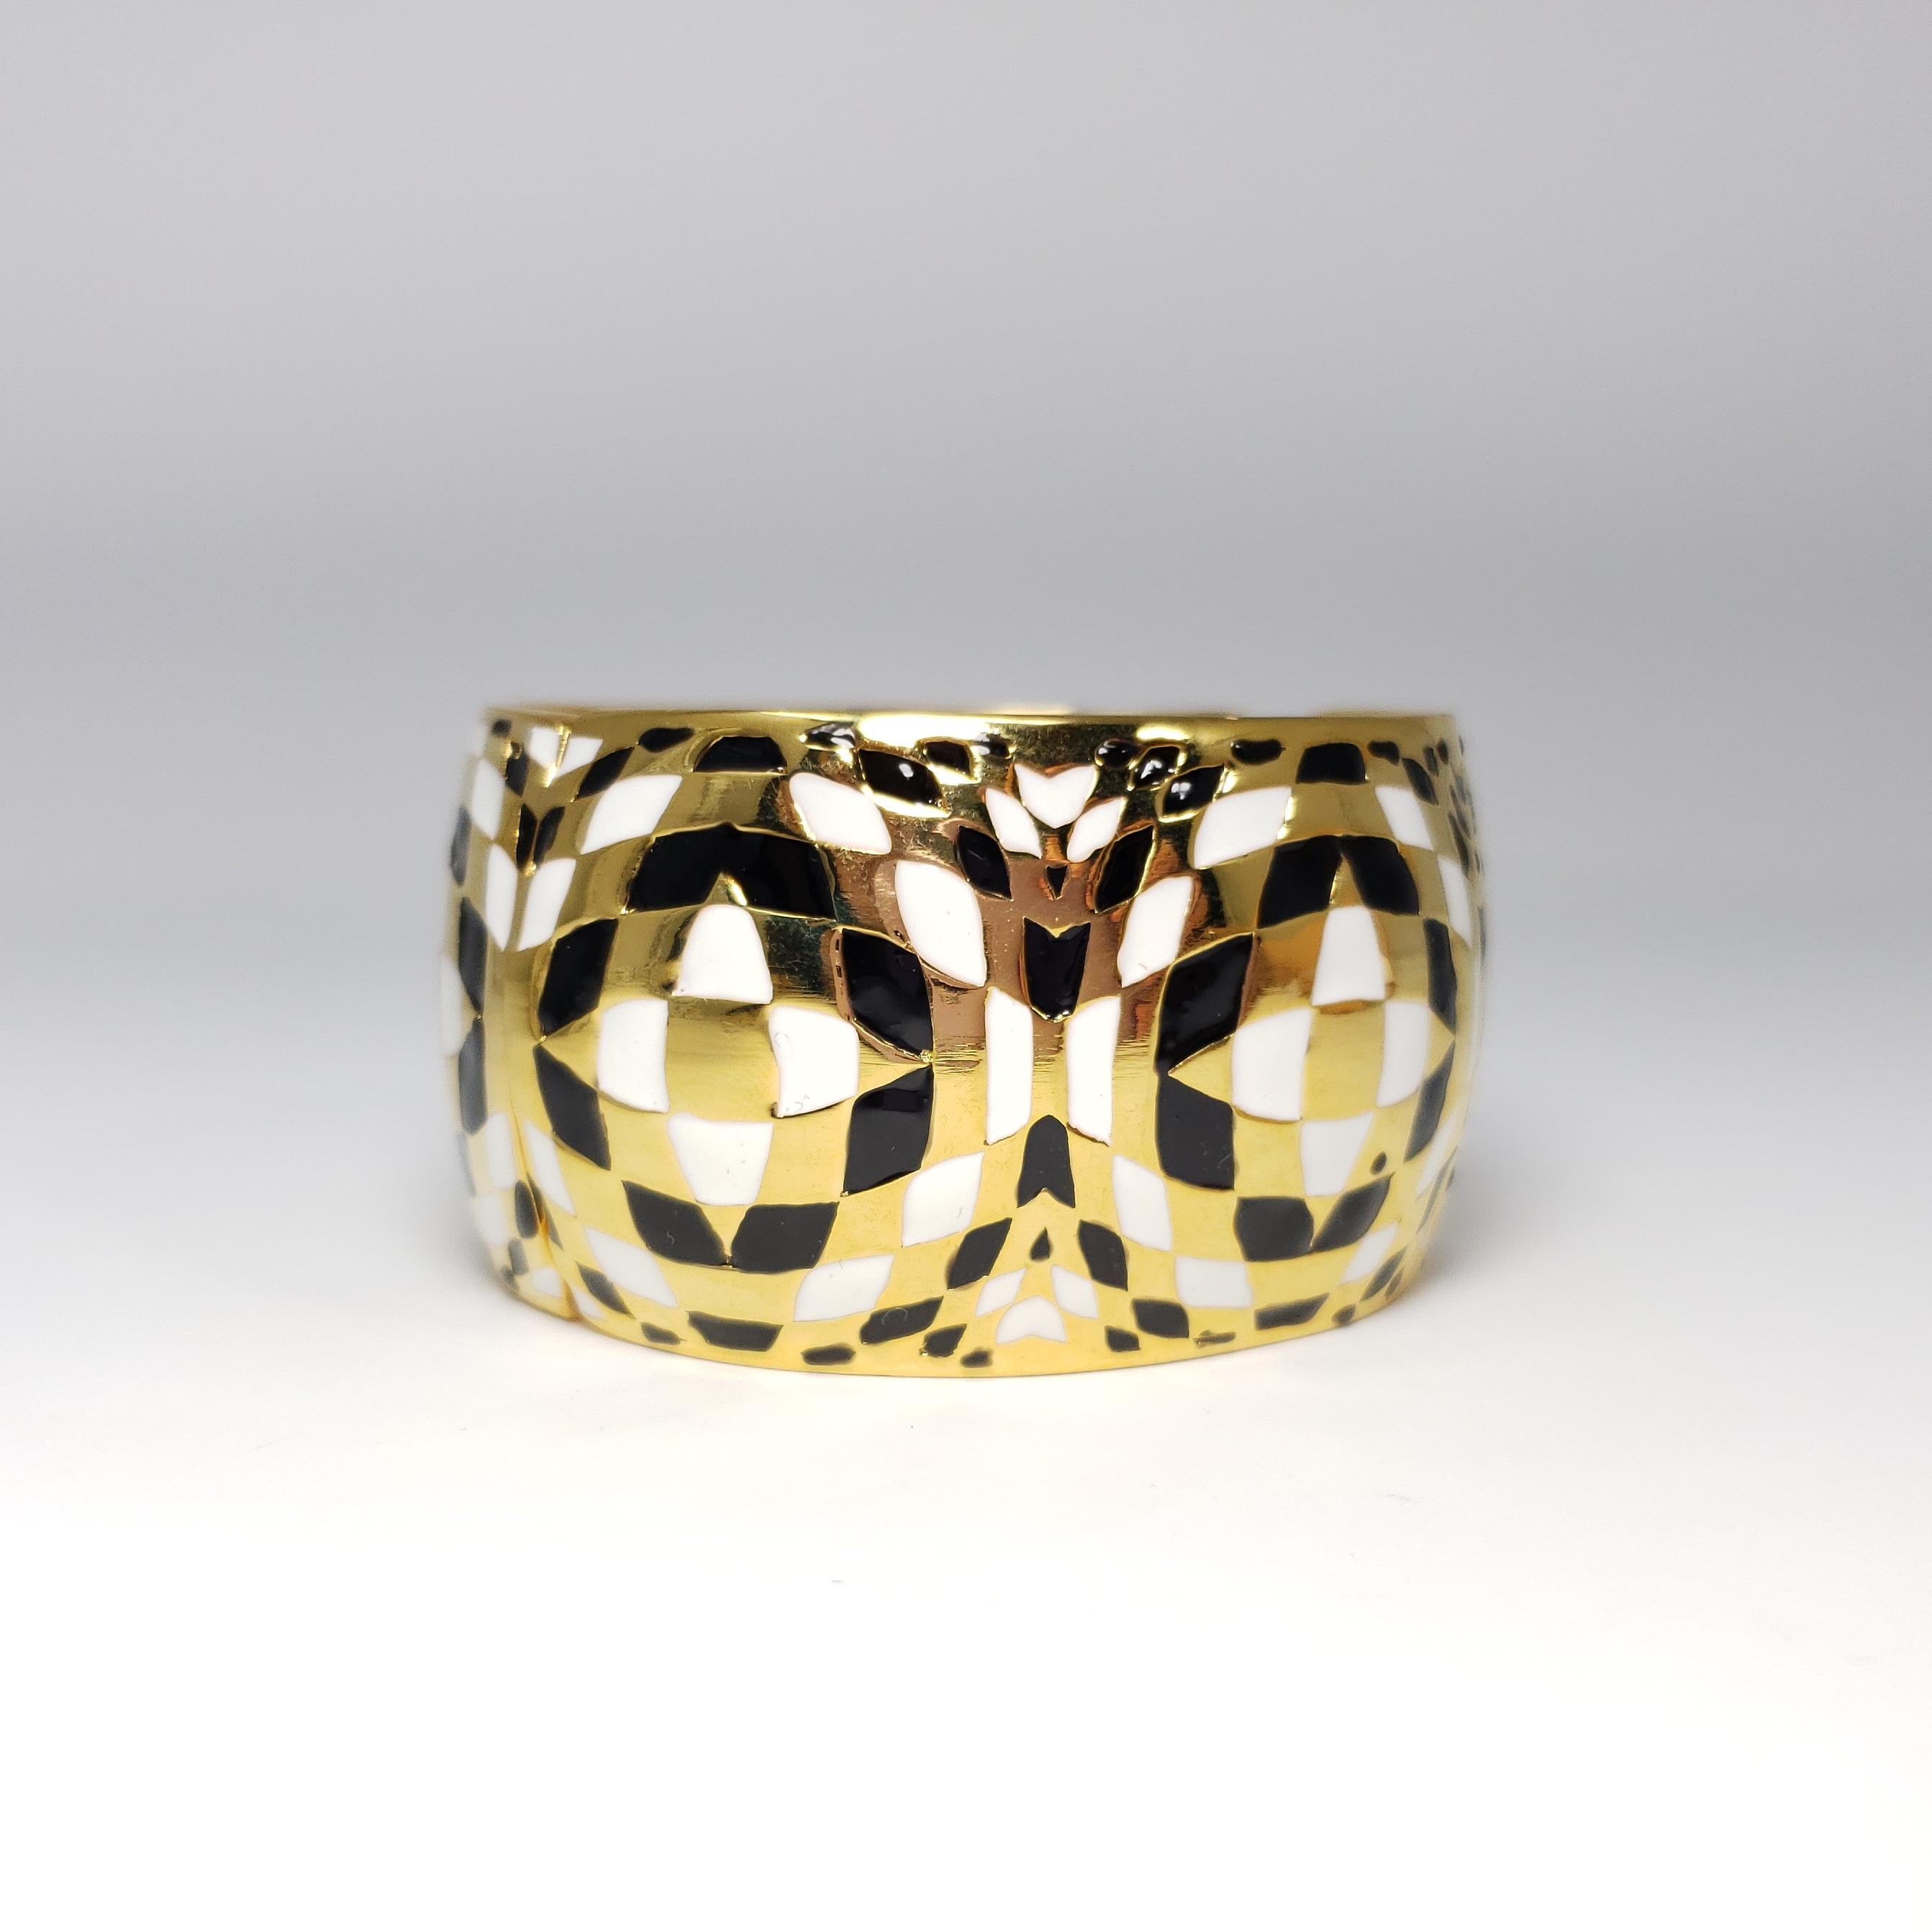 Ein Armband von Kenneth Jay Lane's mit einem exotischen Leopardenmuster. Mit erhabenen vergoldeten Motiven, die mit bunten Kristallen verziert sind.

Höhe: 3,6 cm / 1,4 in
Durchmesser an der breitesten Stelle: 5.9 cm/ 2.34 in
Innerer Umfang: 17,8 cm